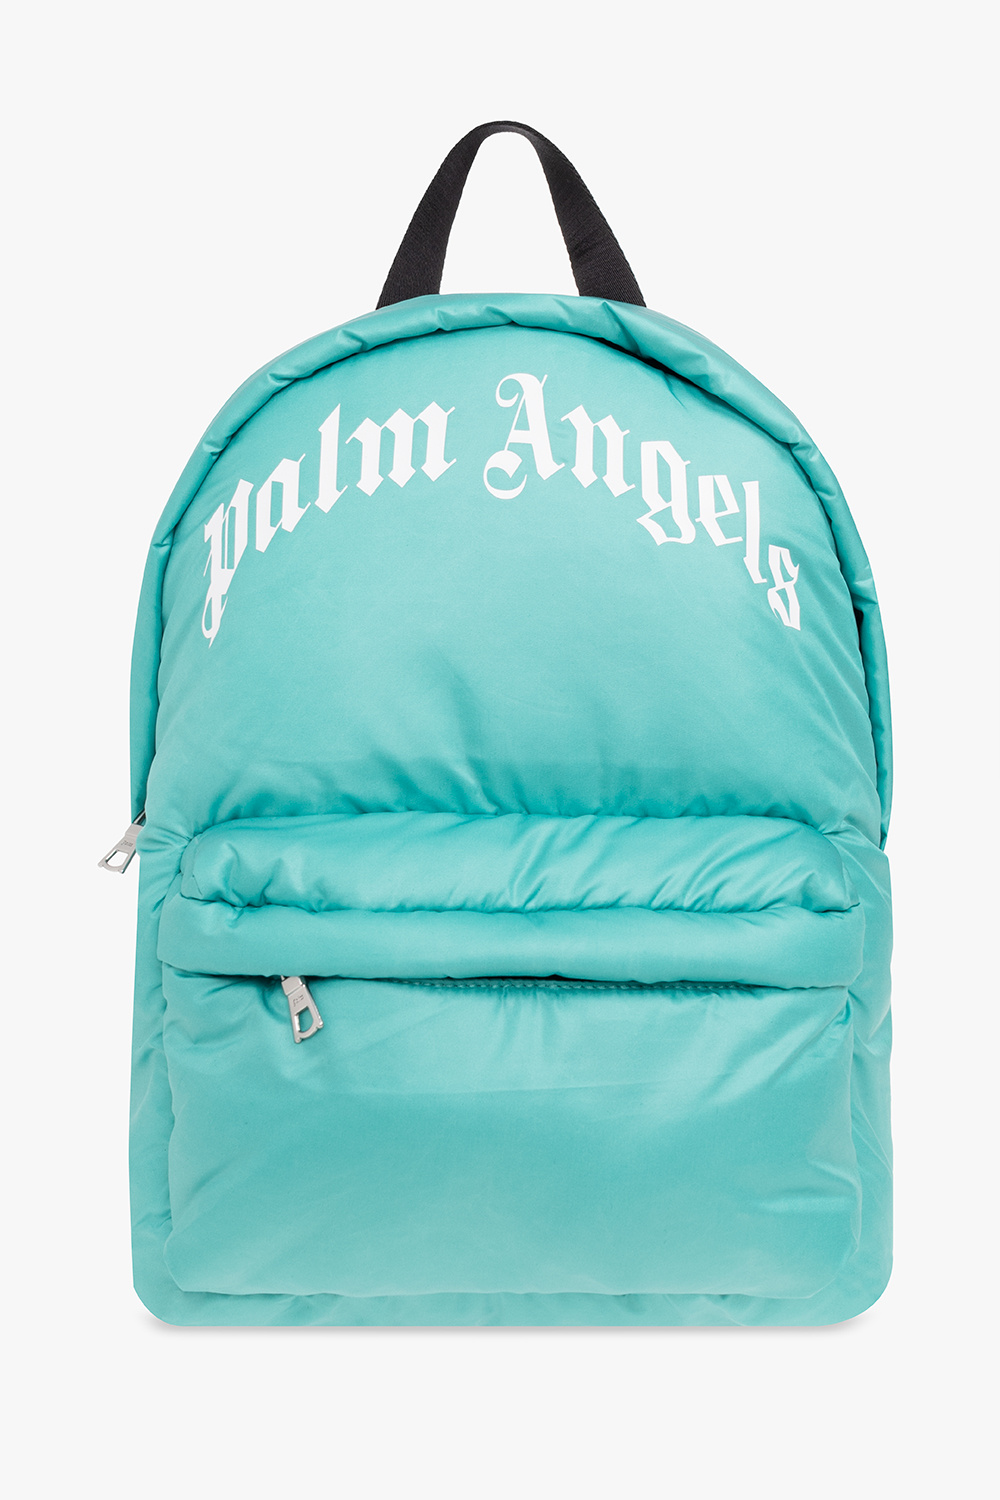 Palm Angels Kids backpack obag with logo